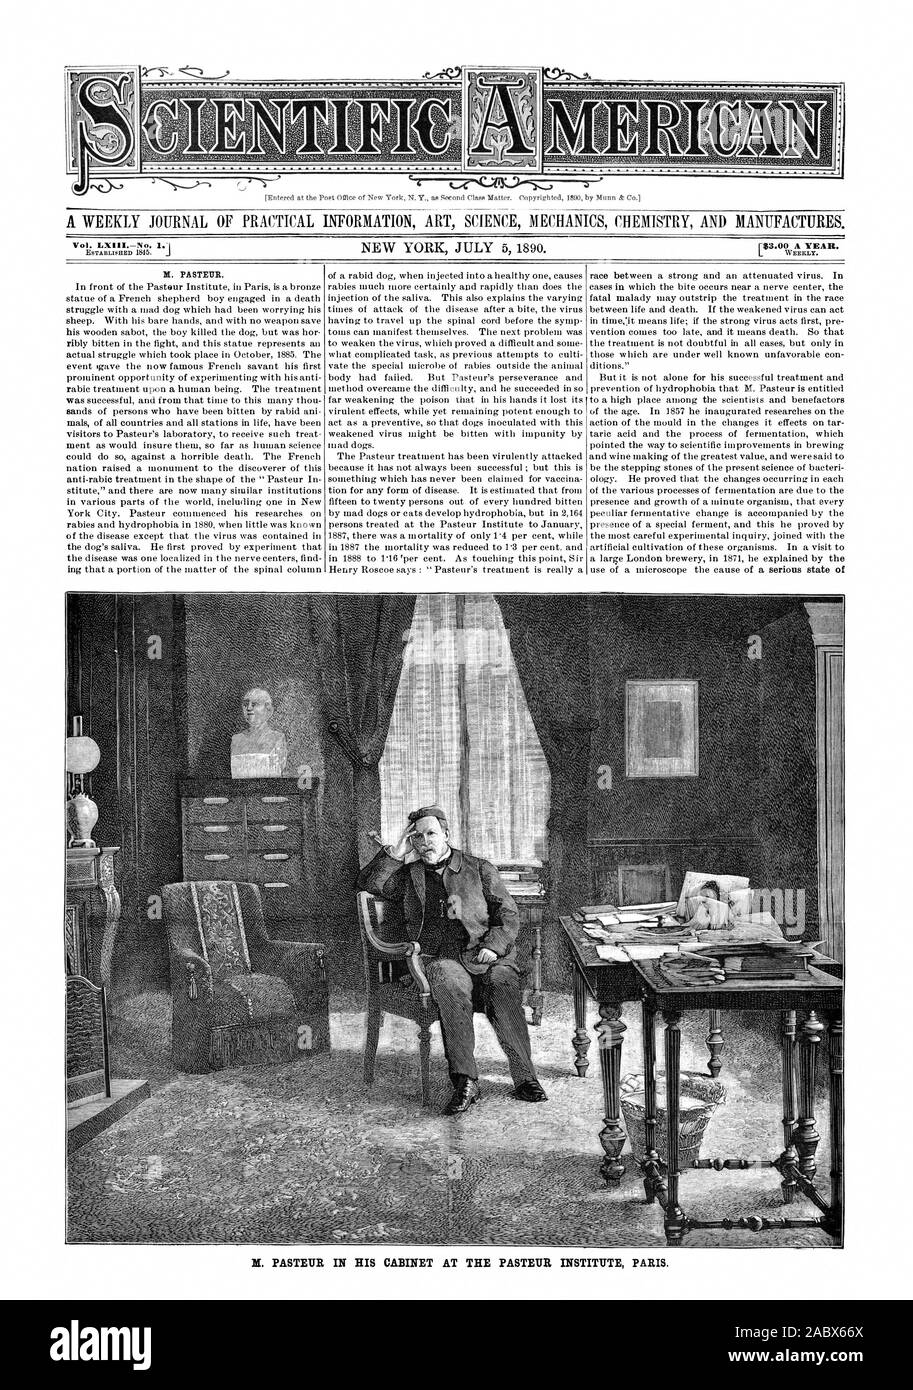 PASTEUR IN HIS CABINET AT THE PASTEUR INSTITUTE PARIS., scientific american, 1890-07-05 Stock Photo